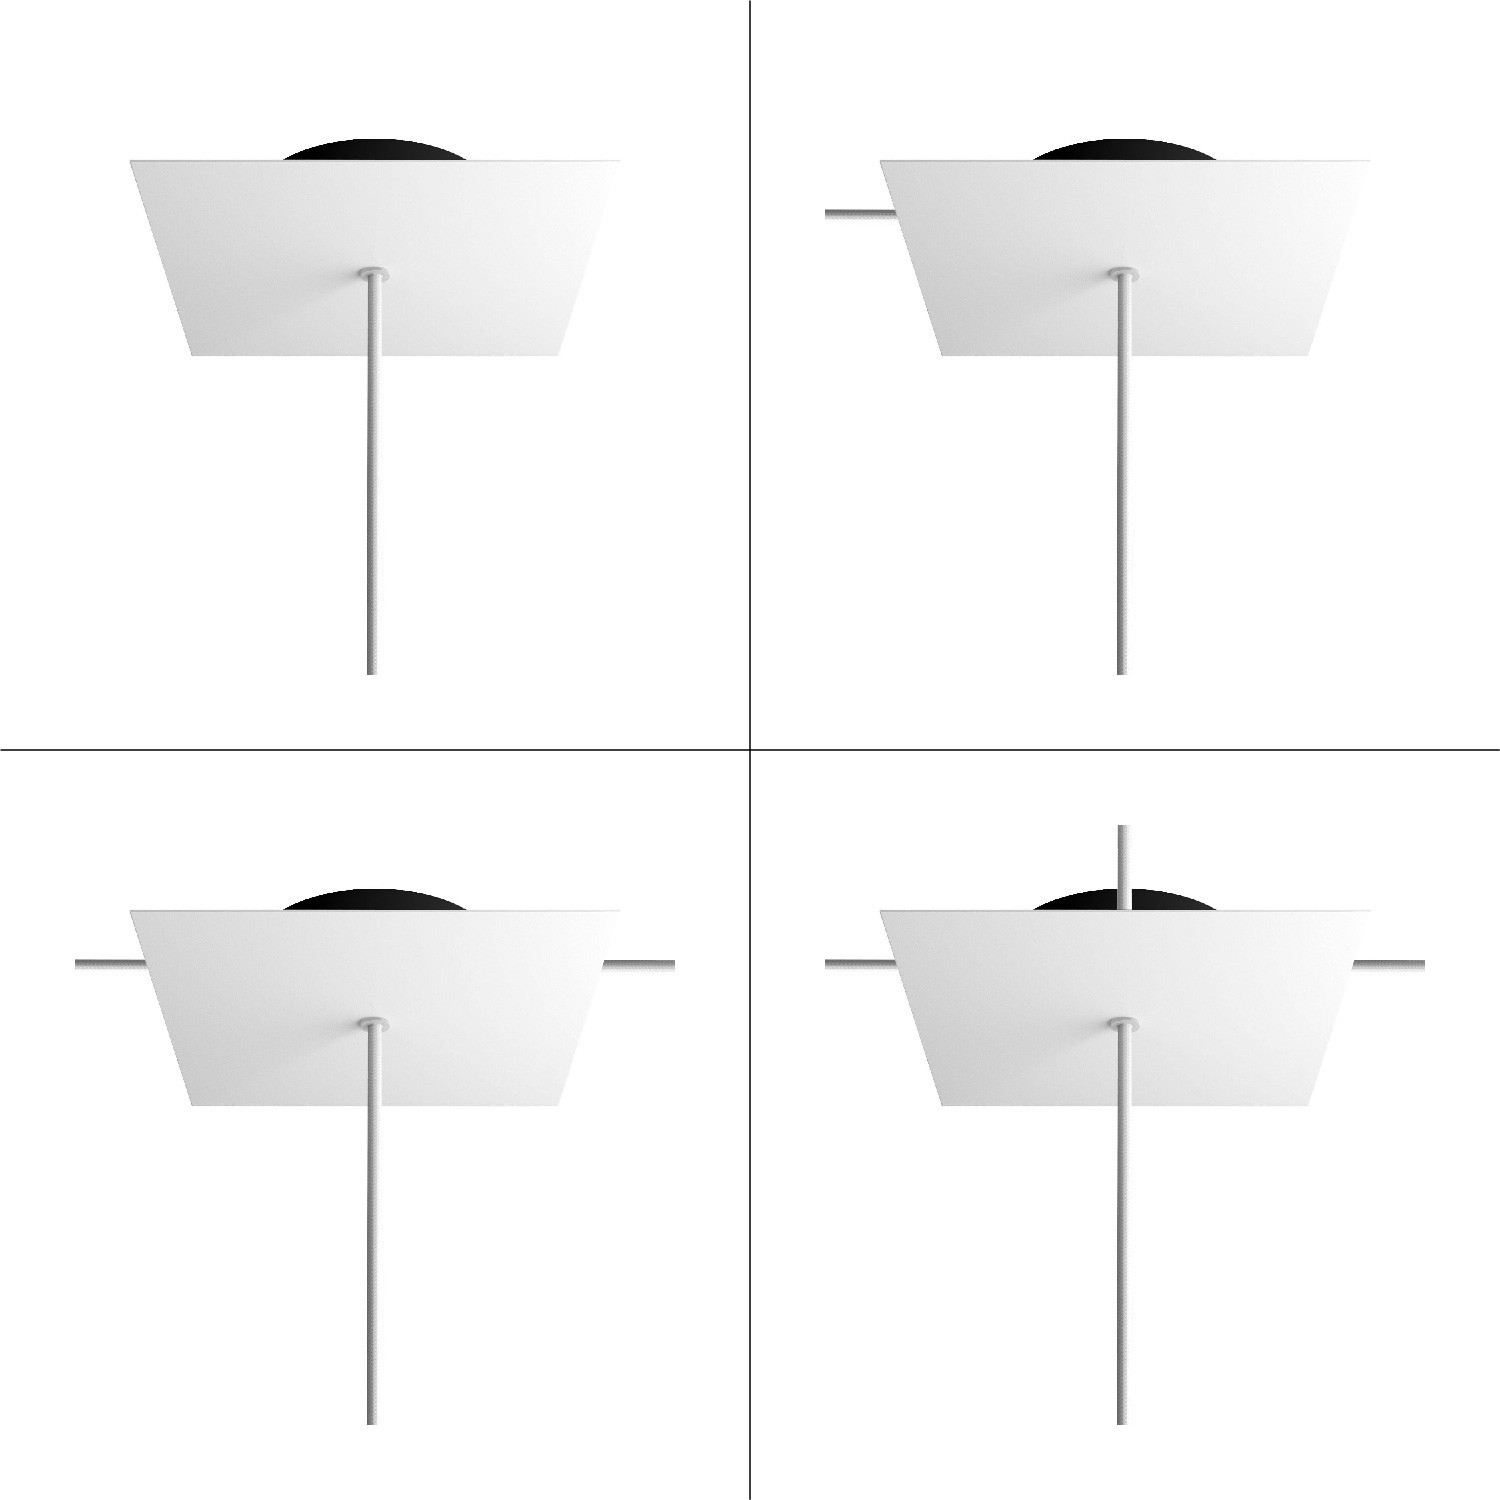 Čtvercový stropní baldachýn Rose-One System s délkou hrany 200 mm a 1 otvorem a 4 boční otvory